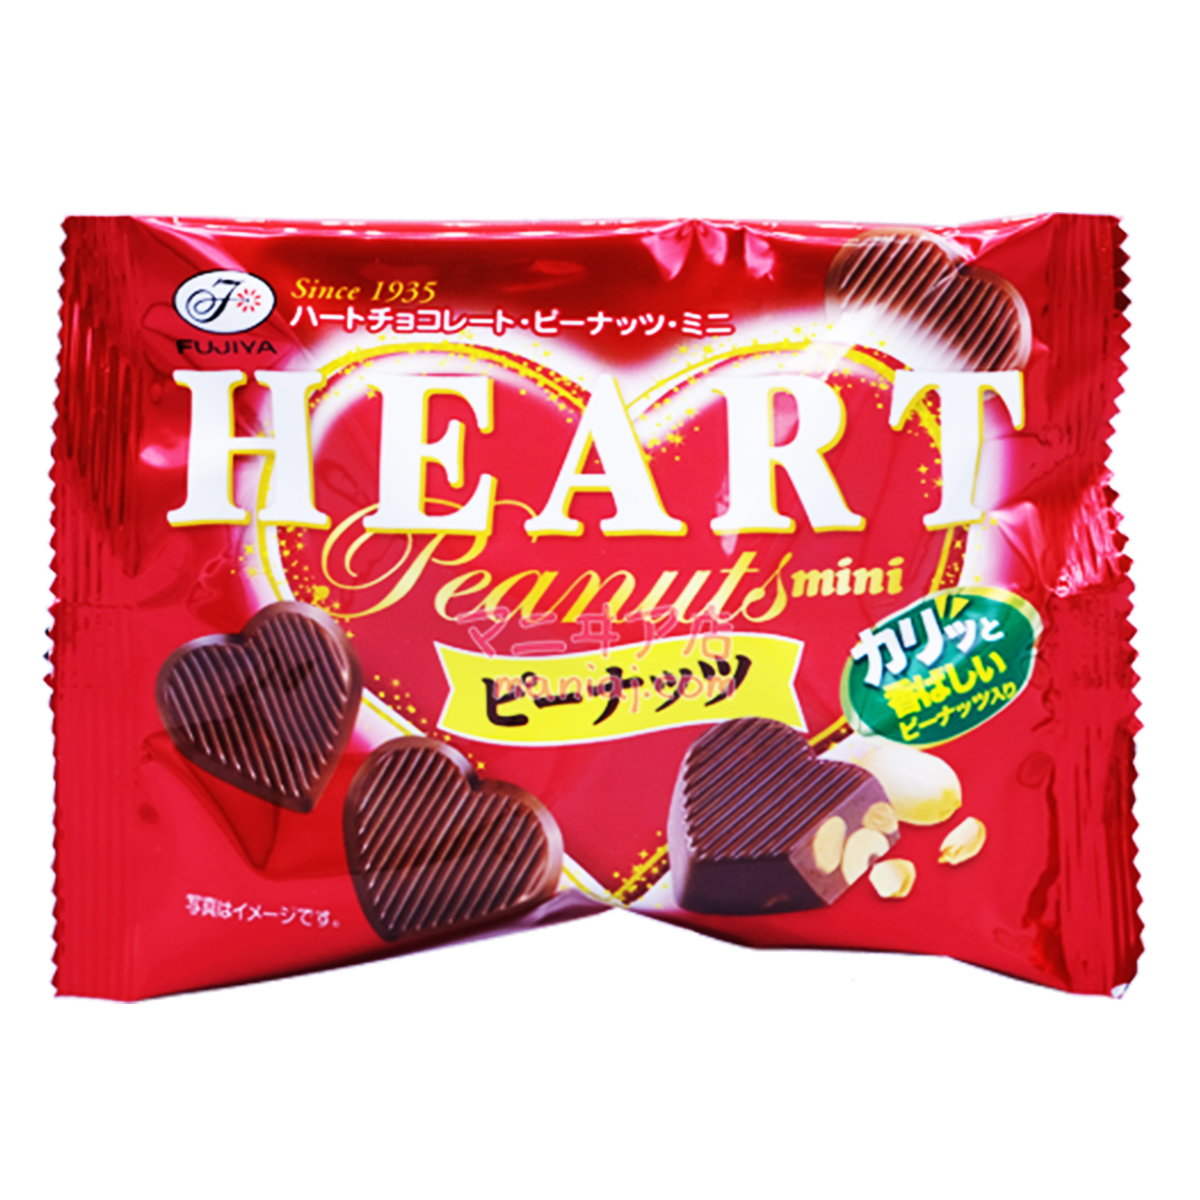 Heart Shaped Peanut Chocolate